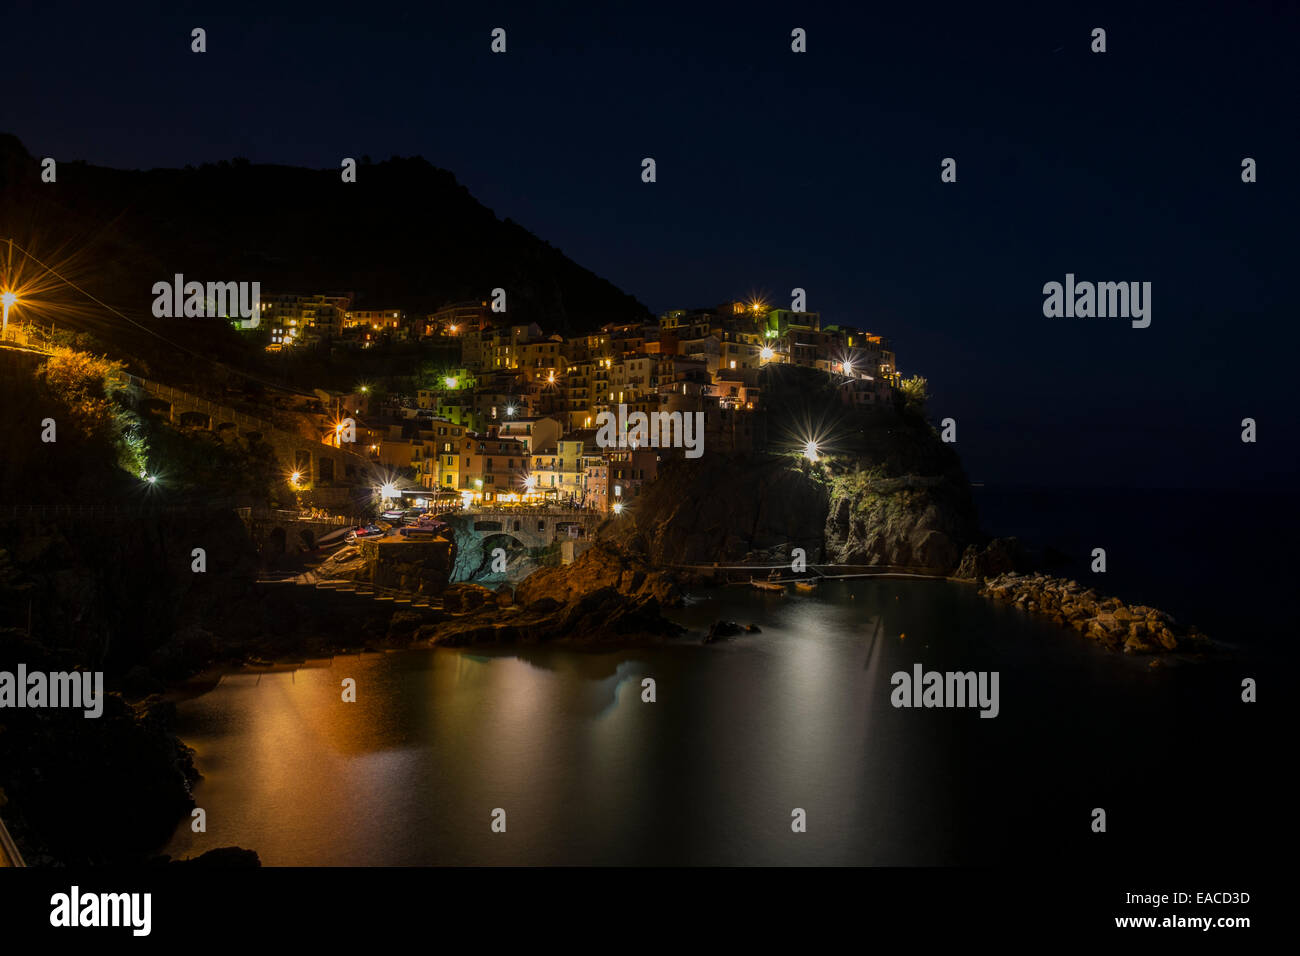 Clifftop village of Manarola in the Cinque Terre. Stock Photo